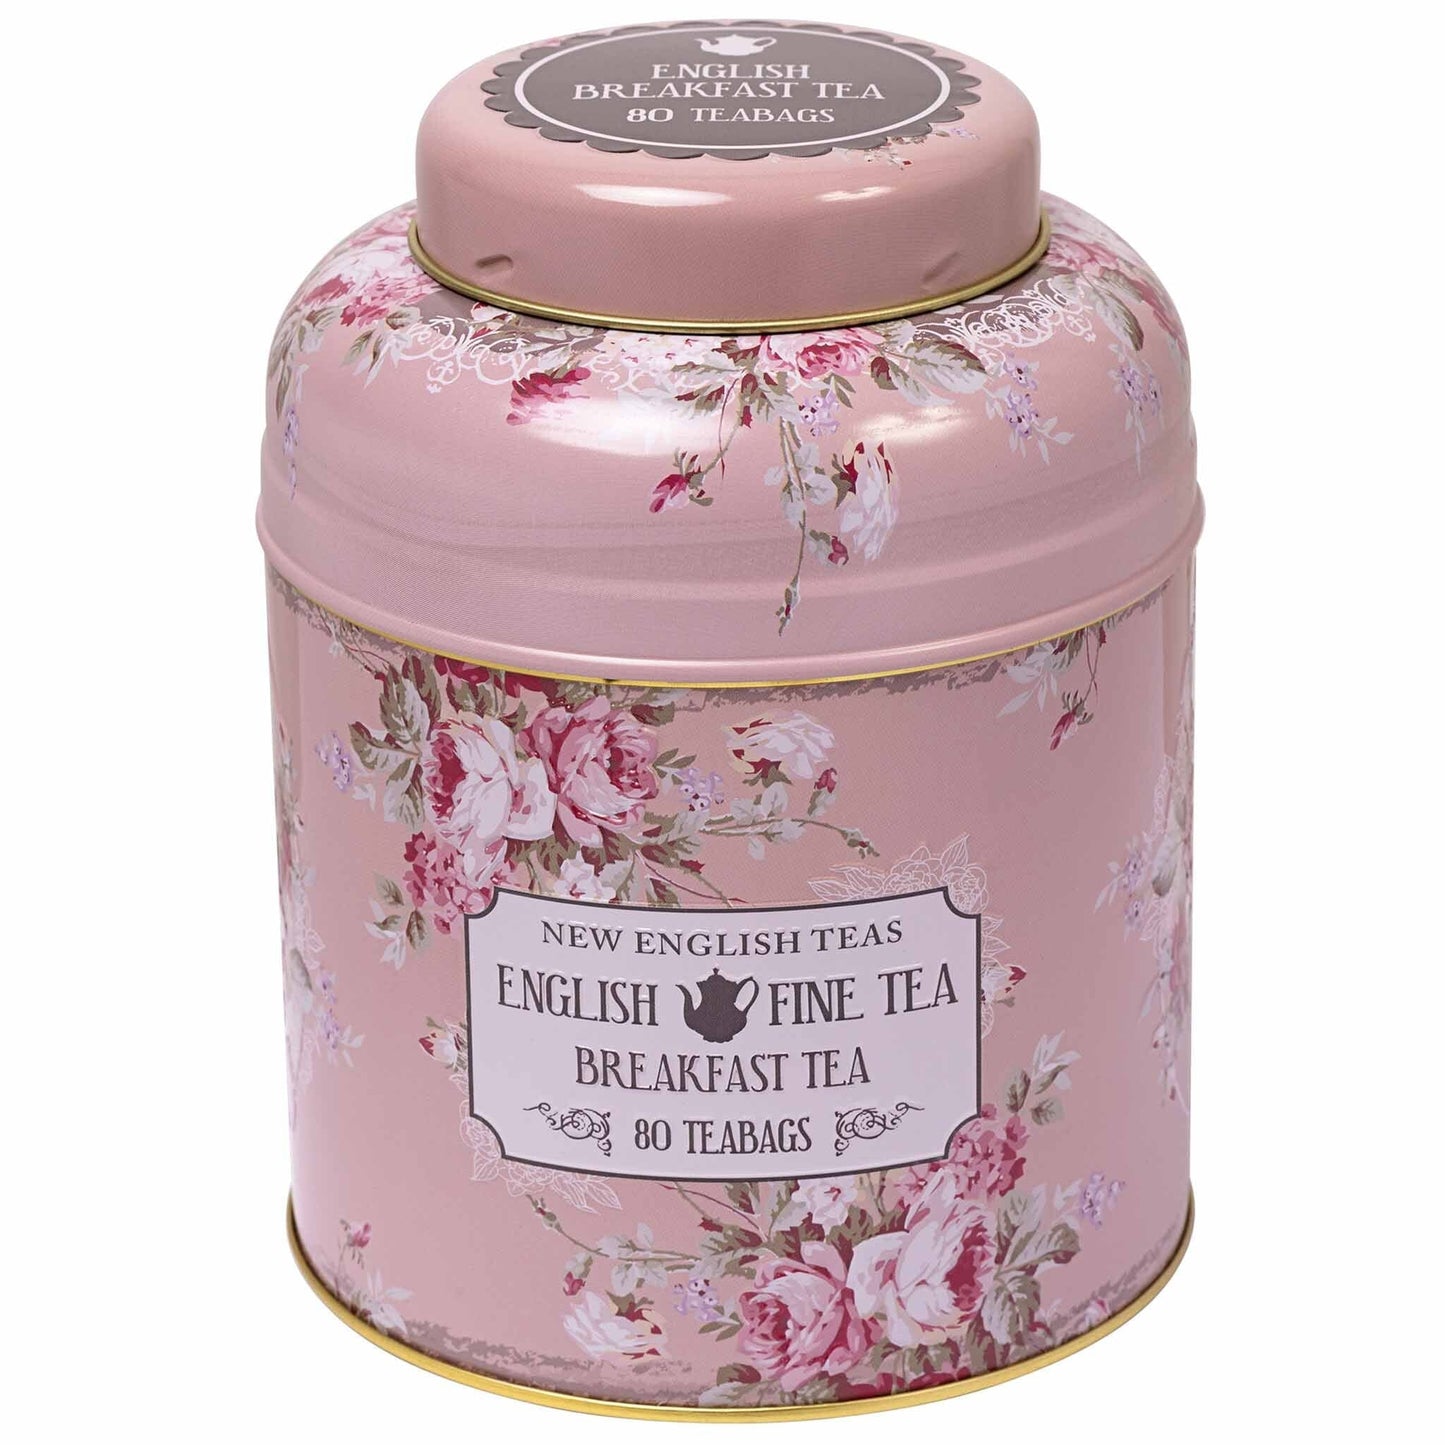 Set of 2 Vintage Floral Tea Caddies Tea Tins New English Teas 